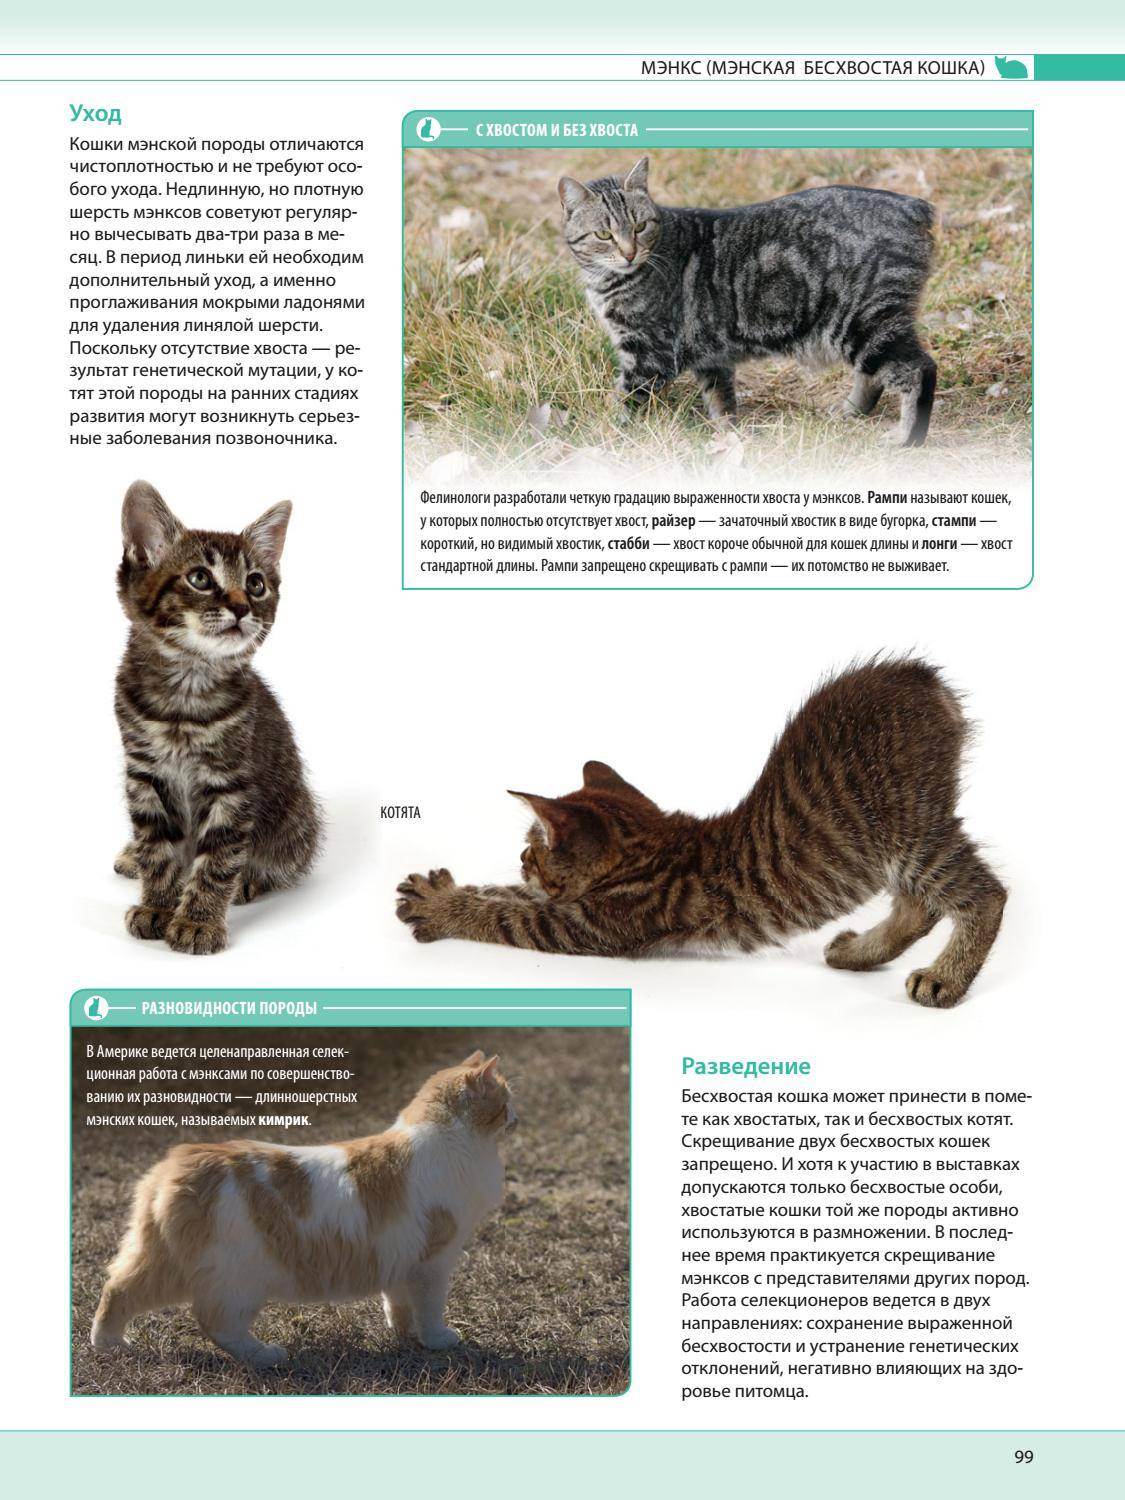 Яванская кошка (яванез): описание породы, характер, советы по содержанию и уходу, фото